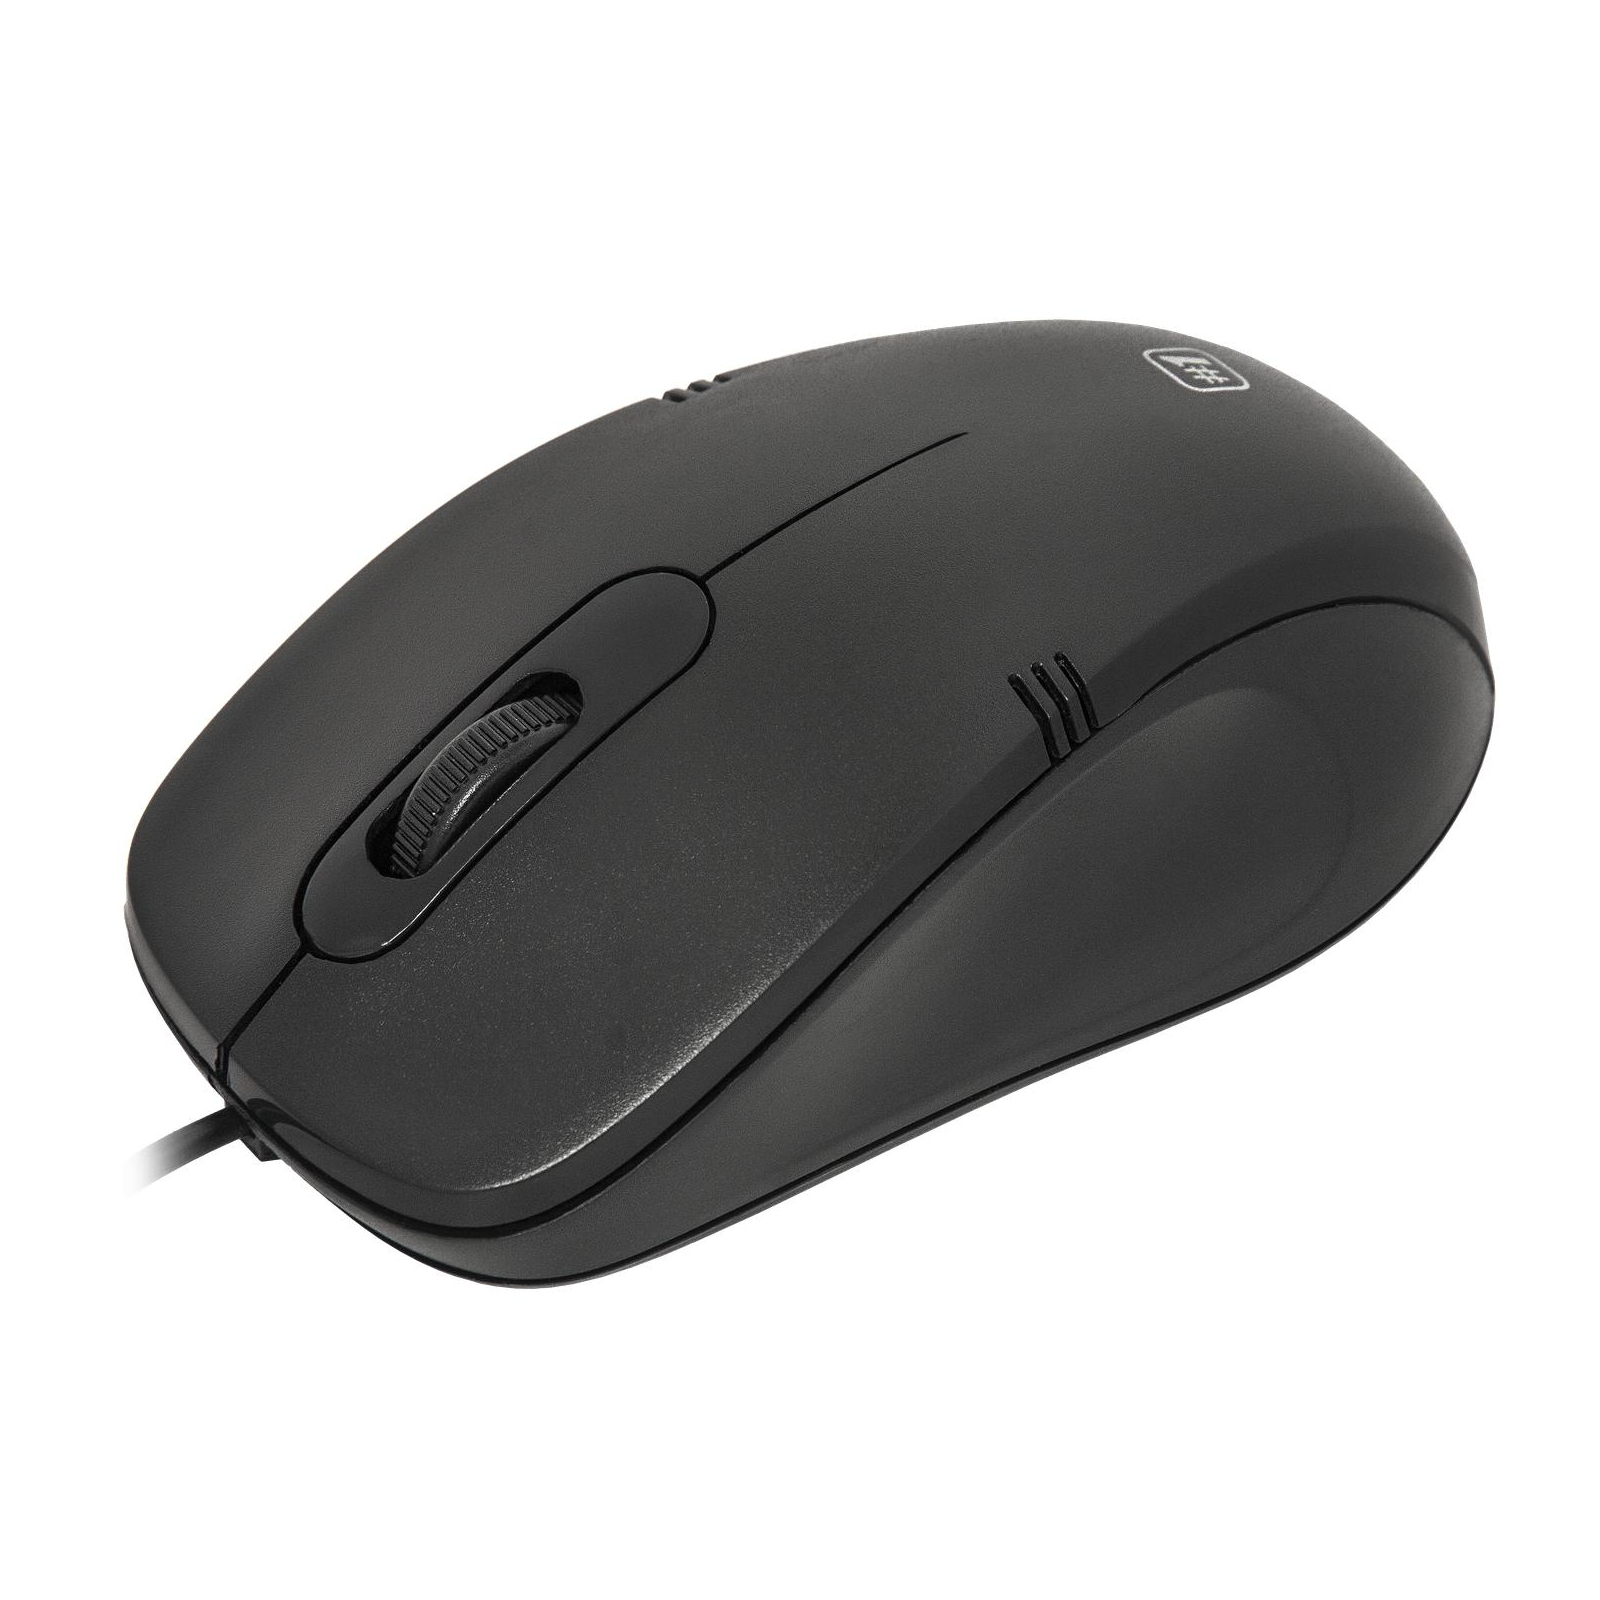 Мышка Defender MM-930 Black (52930)